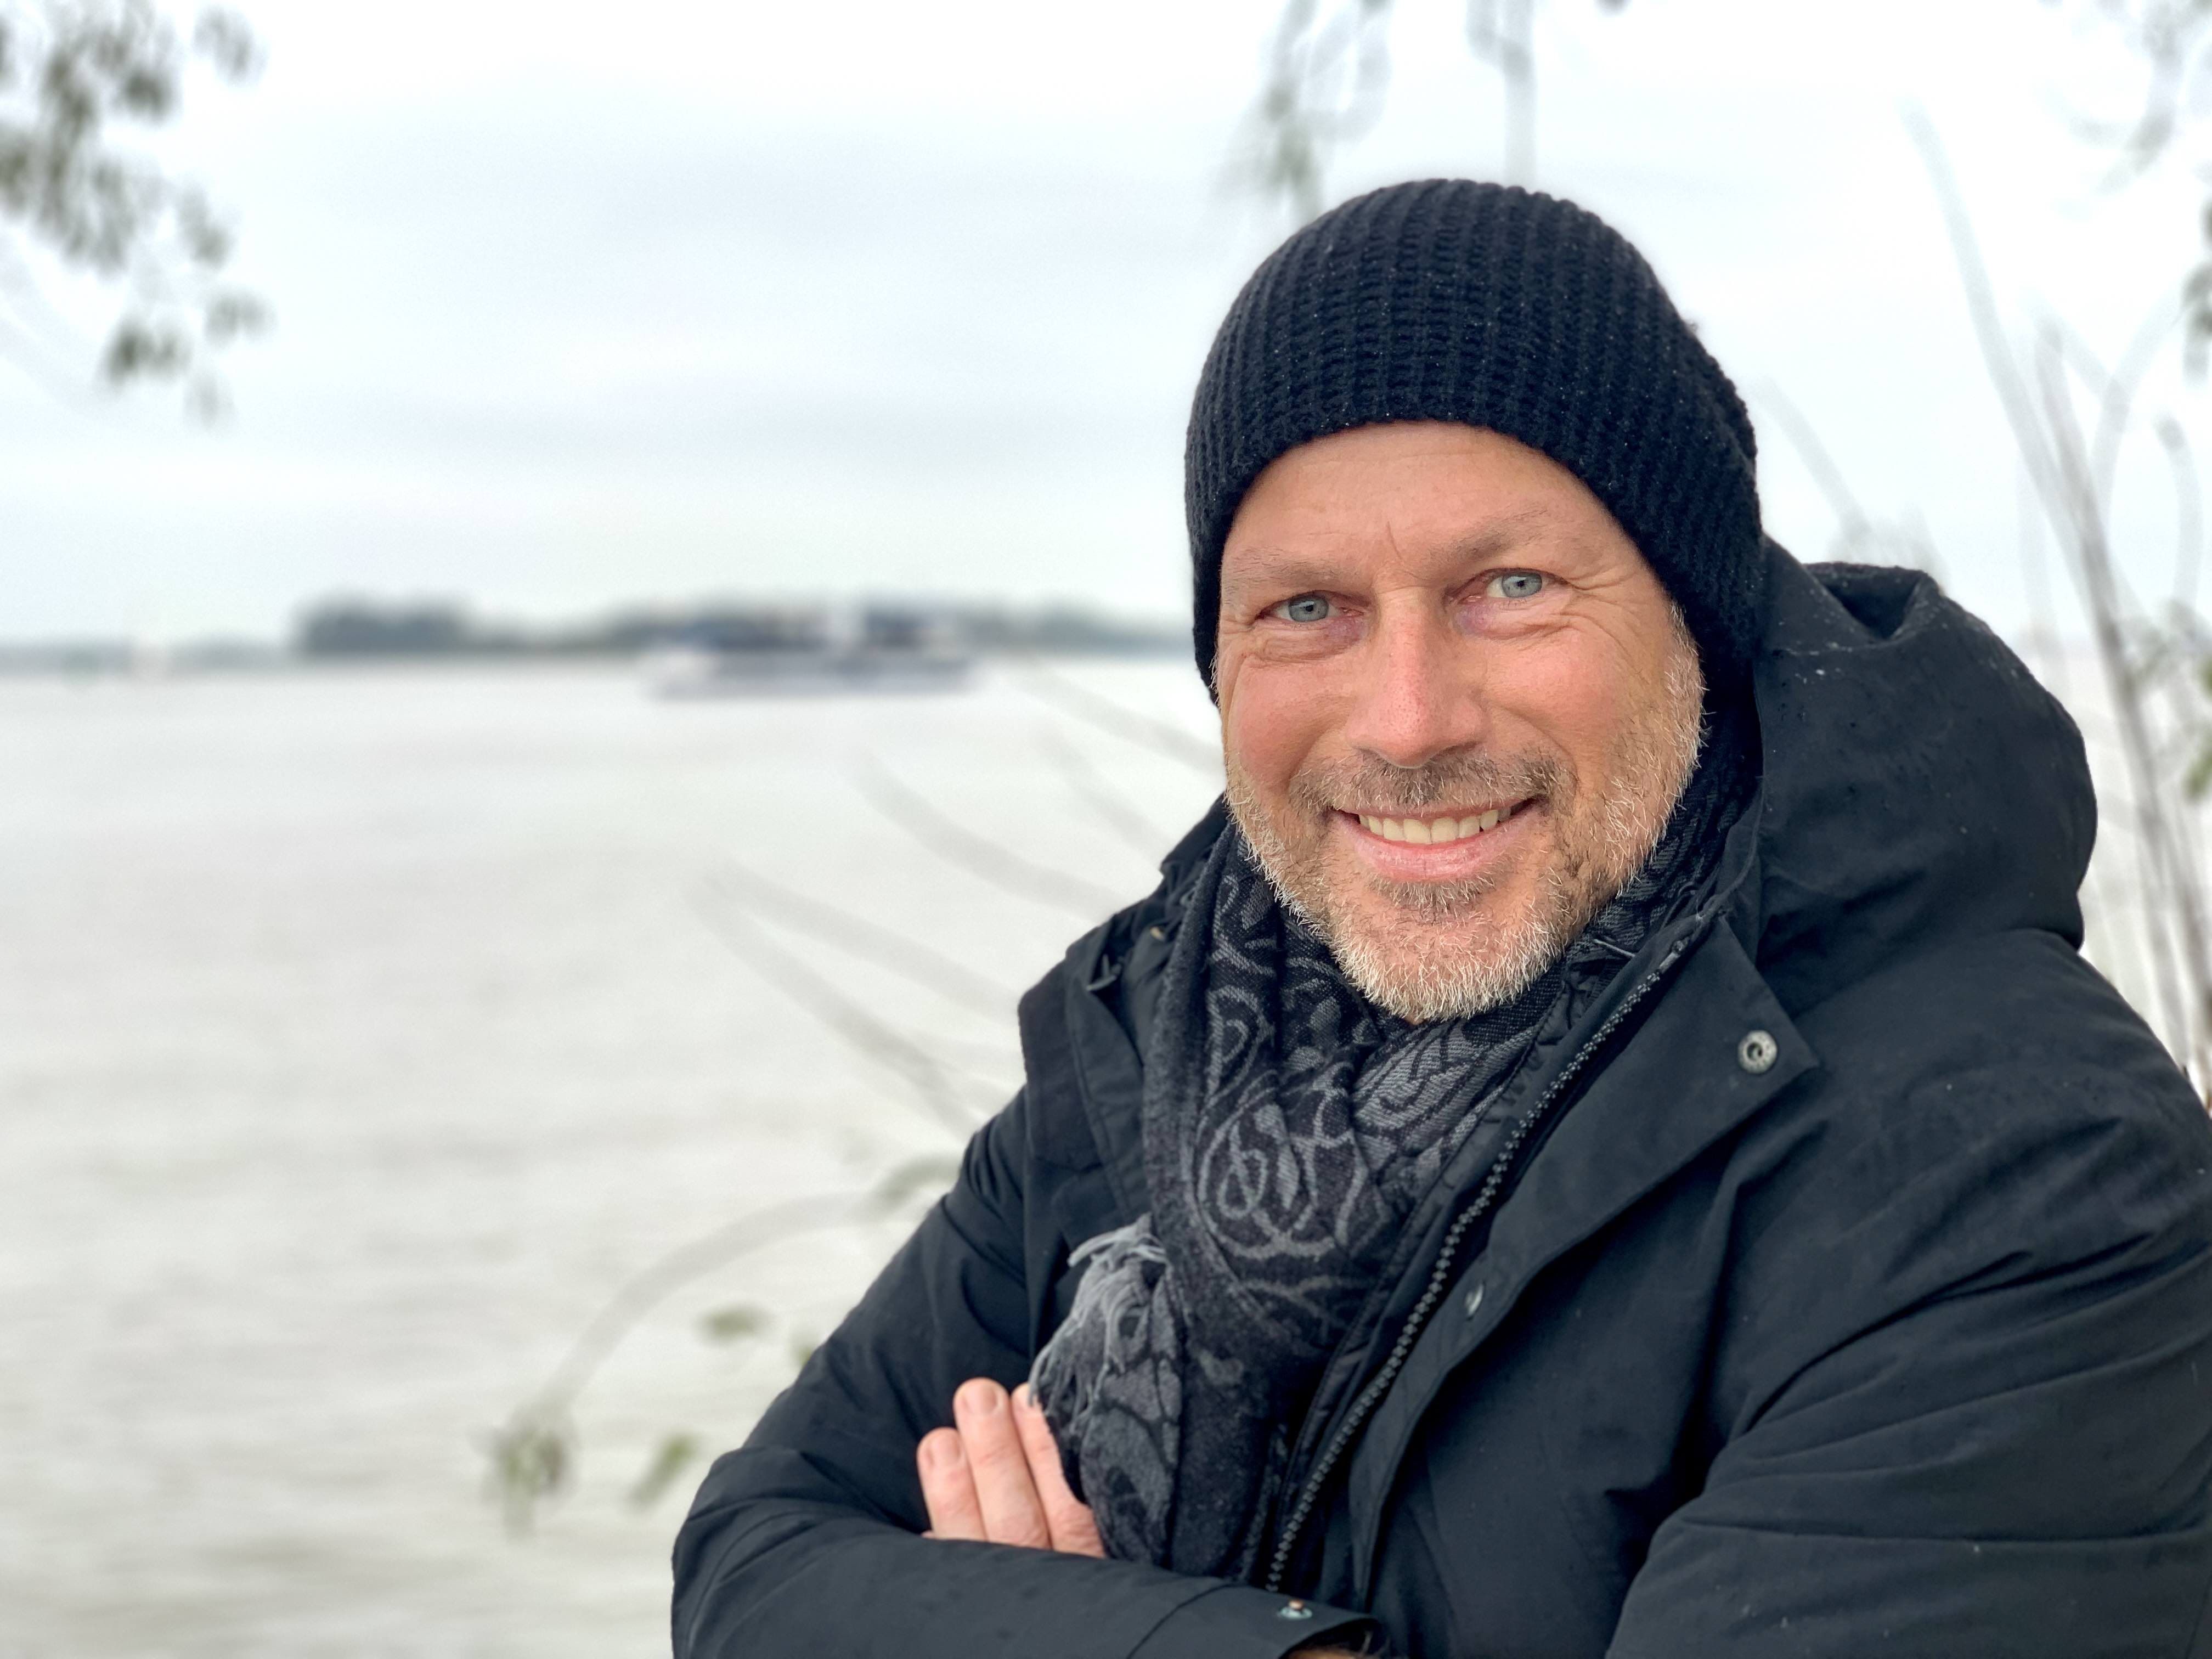 Kreuzfahrtdirektor Jan Bryde als Citizen Scientist